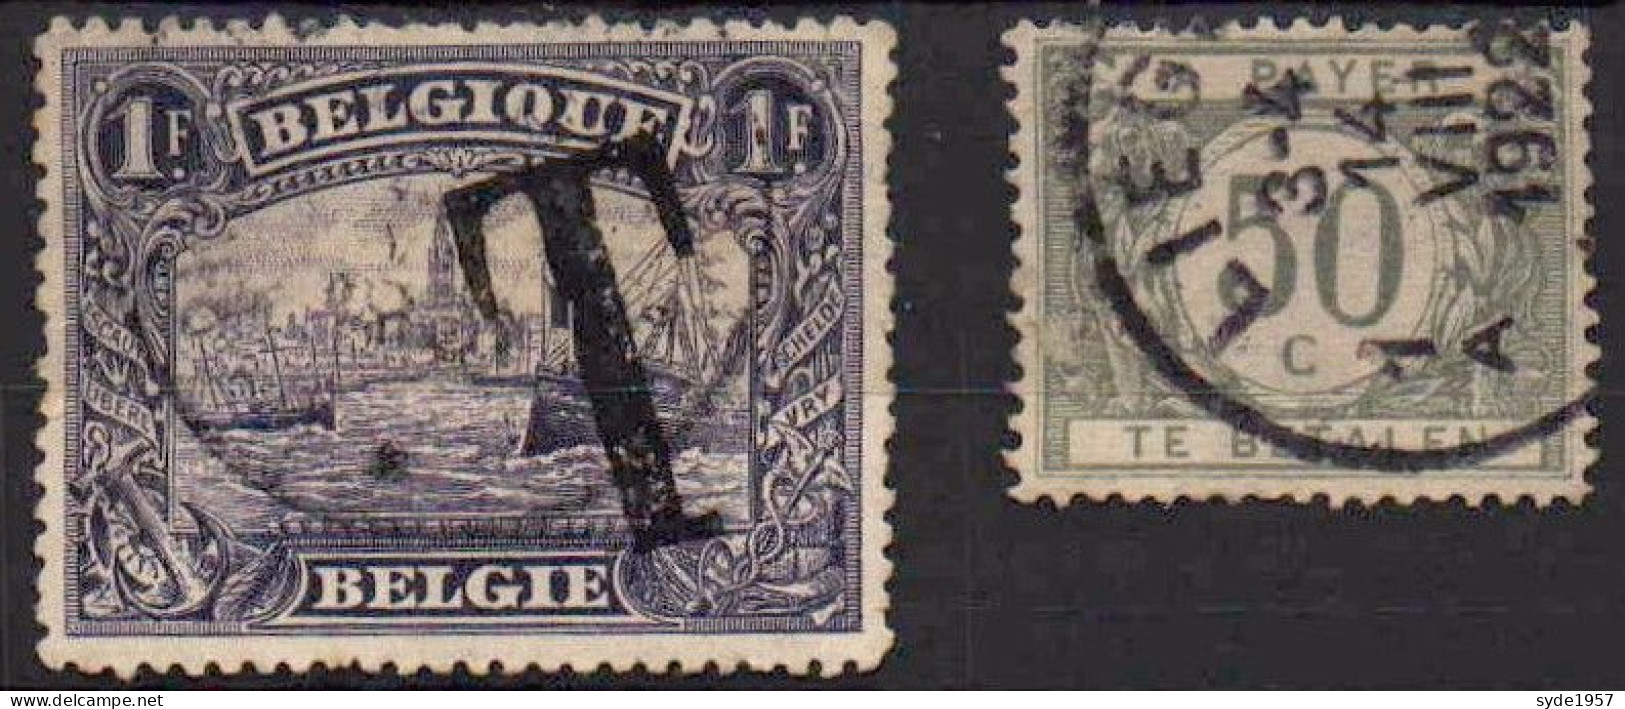 Belgique - Timbres Taxe 1919 : 2 Timbres  COB TX25 Et TX 31 (cote Totale > 3,50€) - Stamps